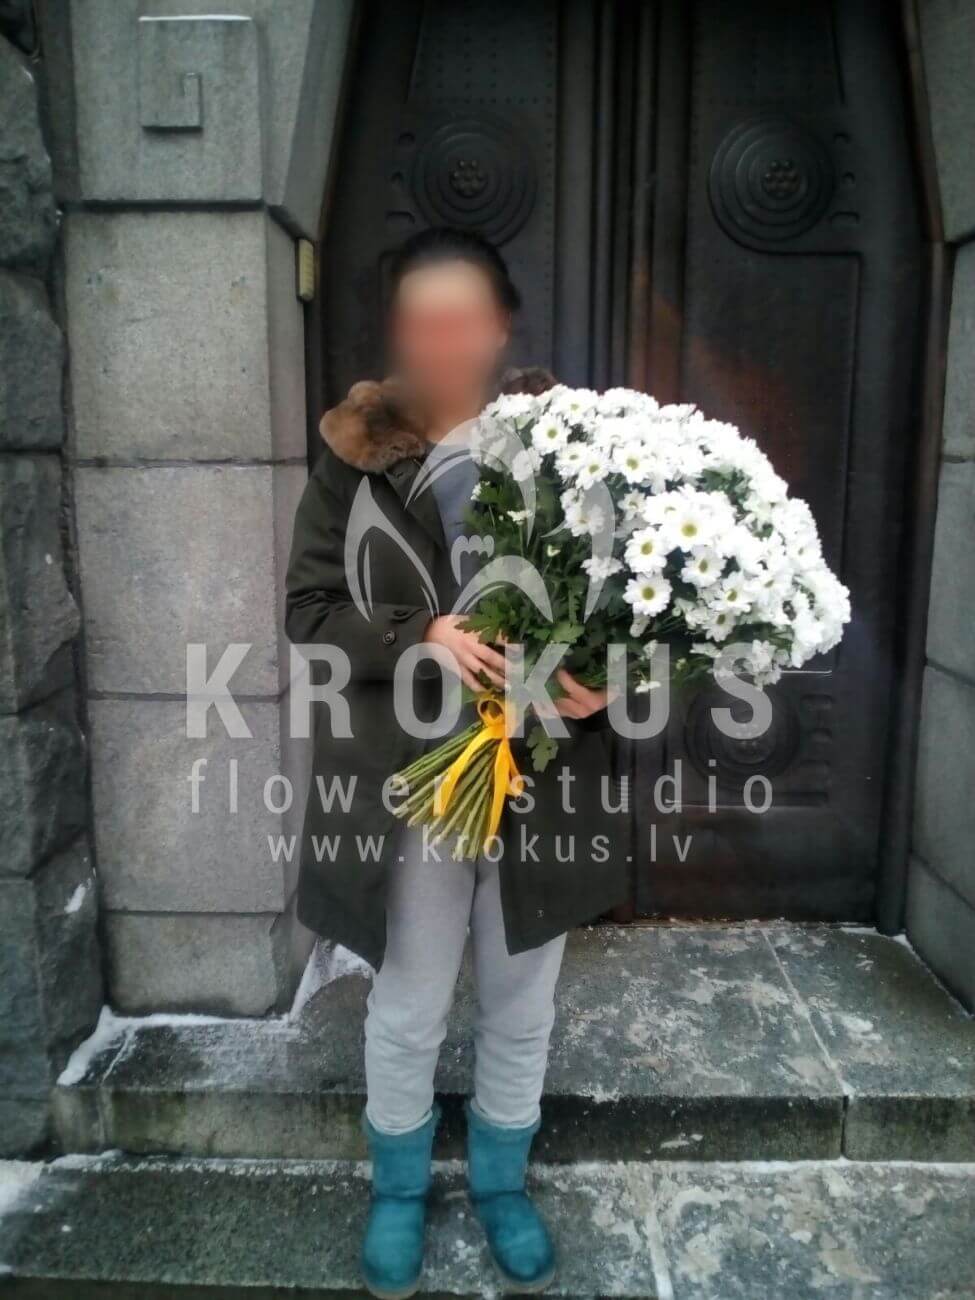 Доставка цветов в город Latvia (ромашкихризантемы)